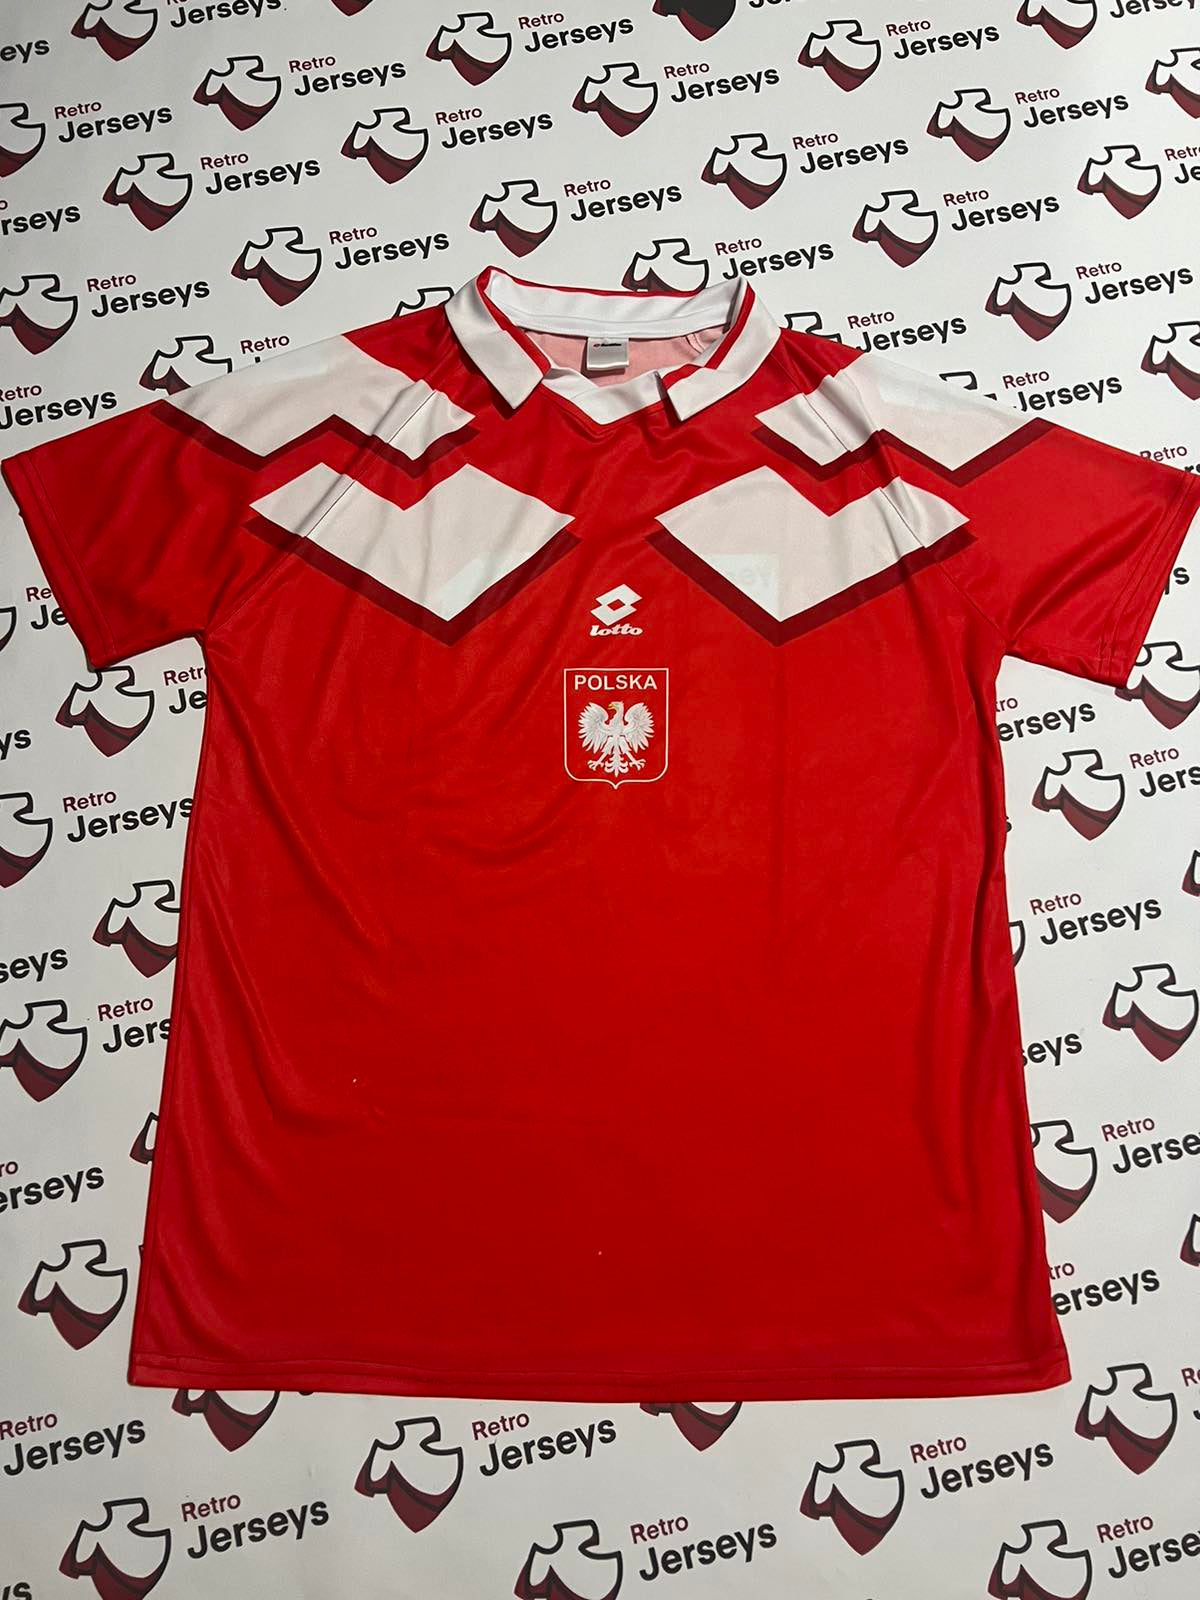 Poland 1992-1994 Away - Retro Jerseys